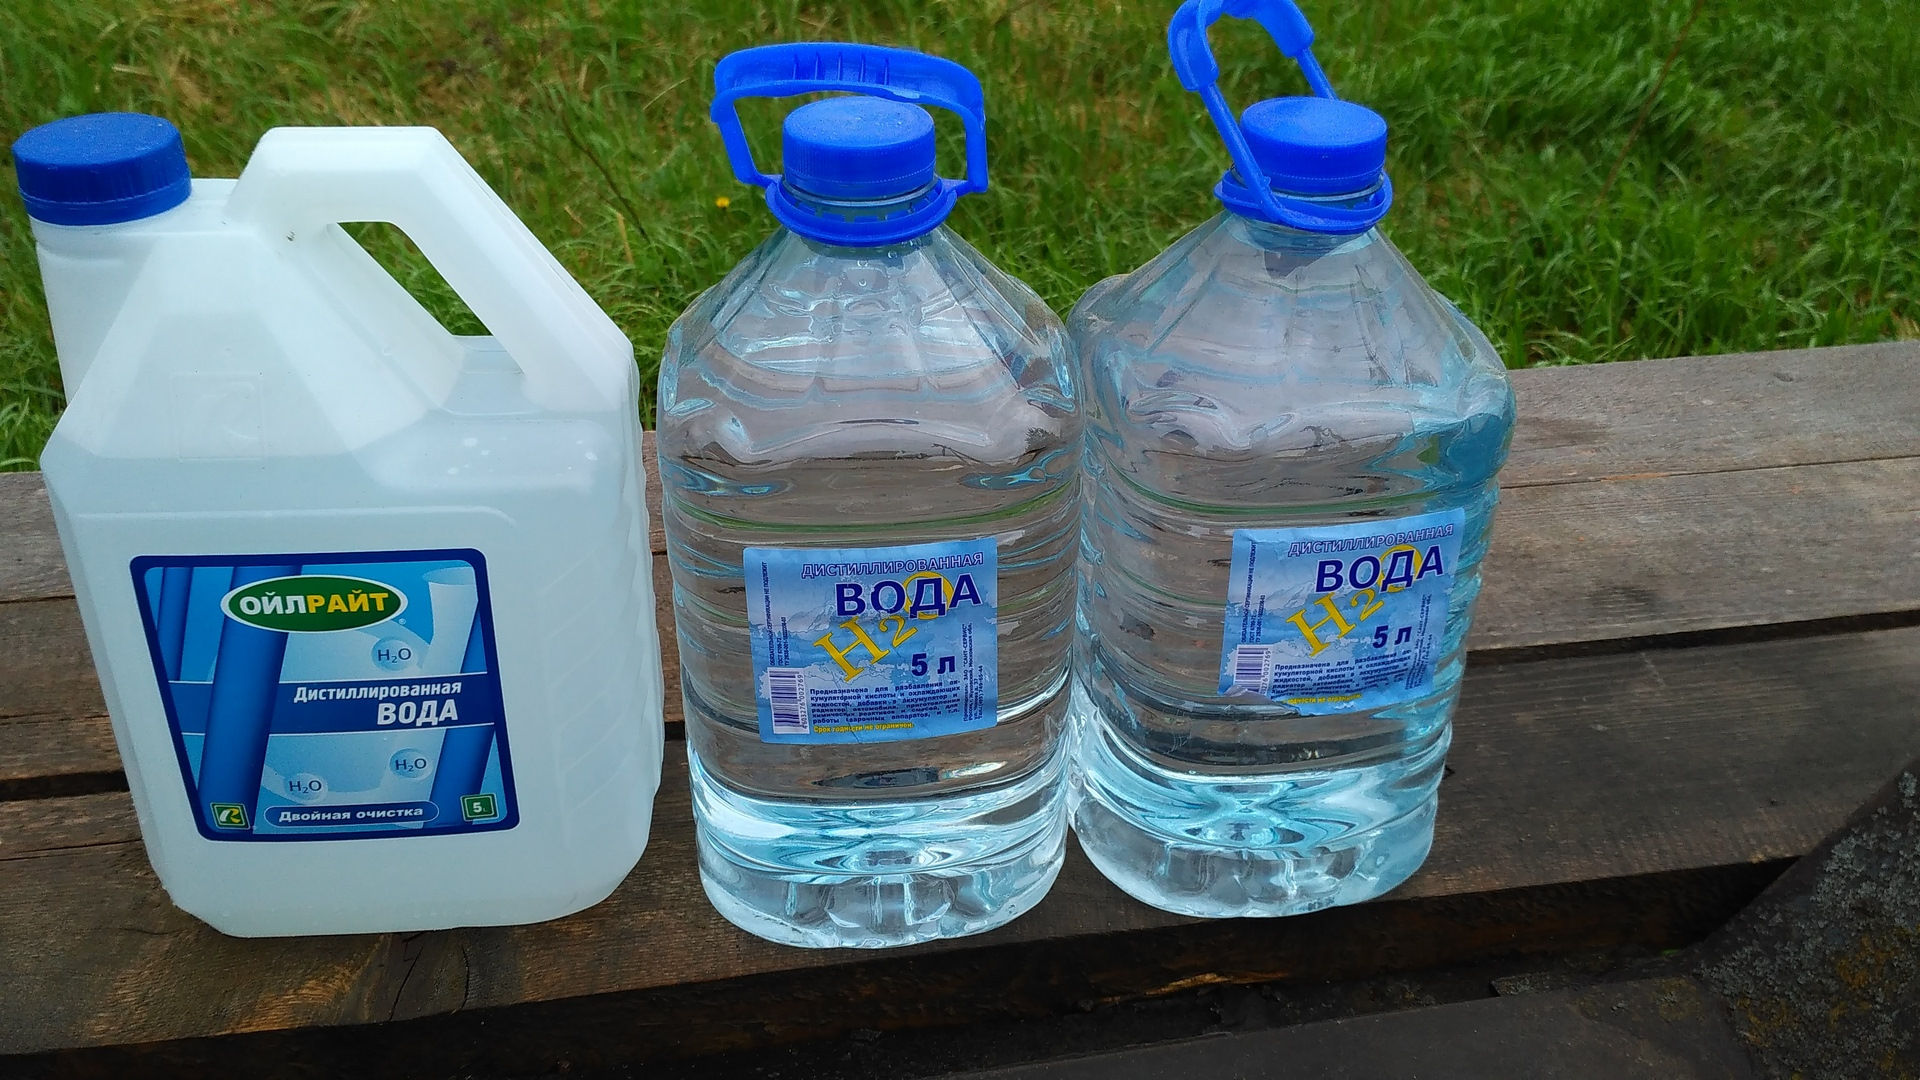 Где Купить Дистиллированную Воду В Новосибирске